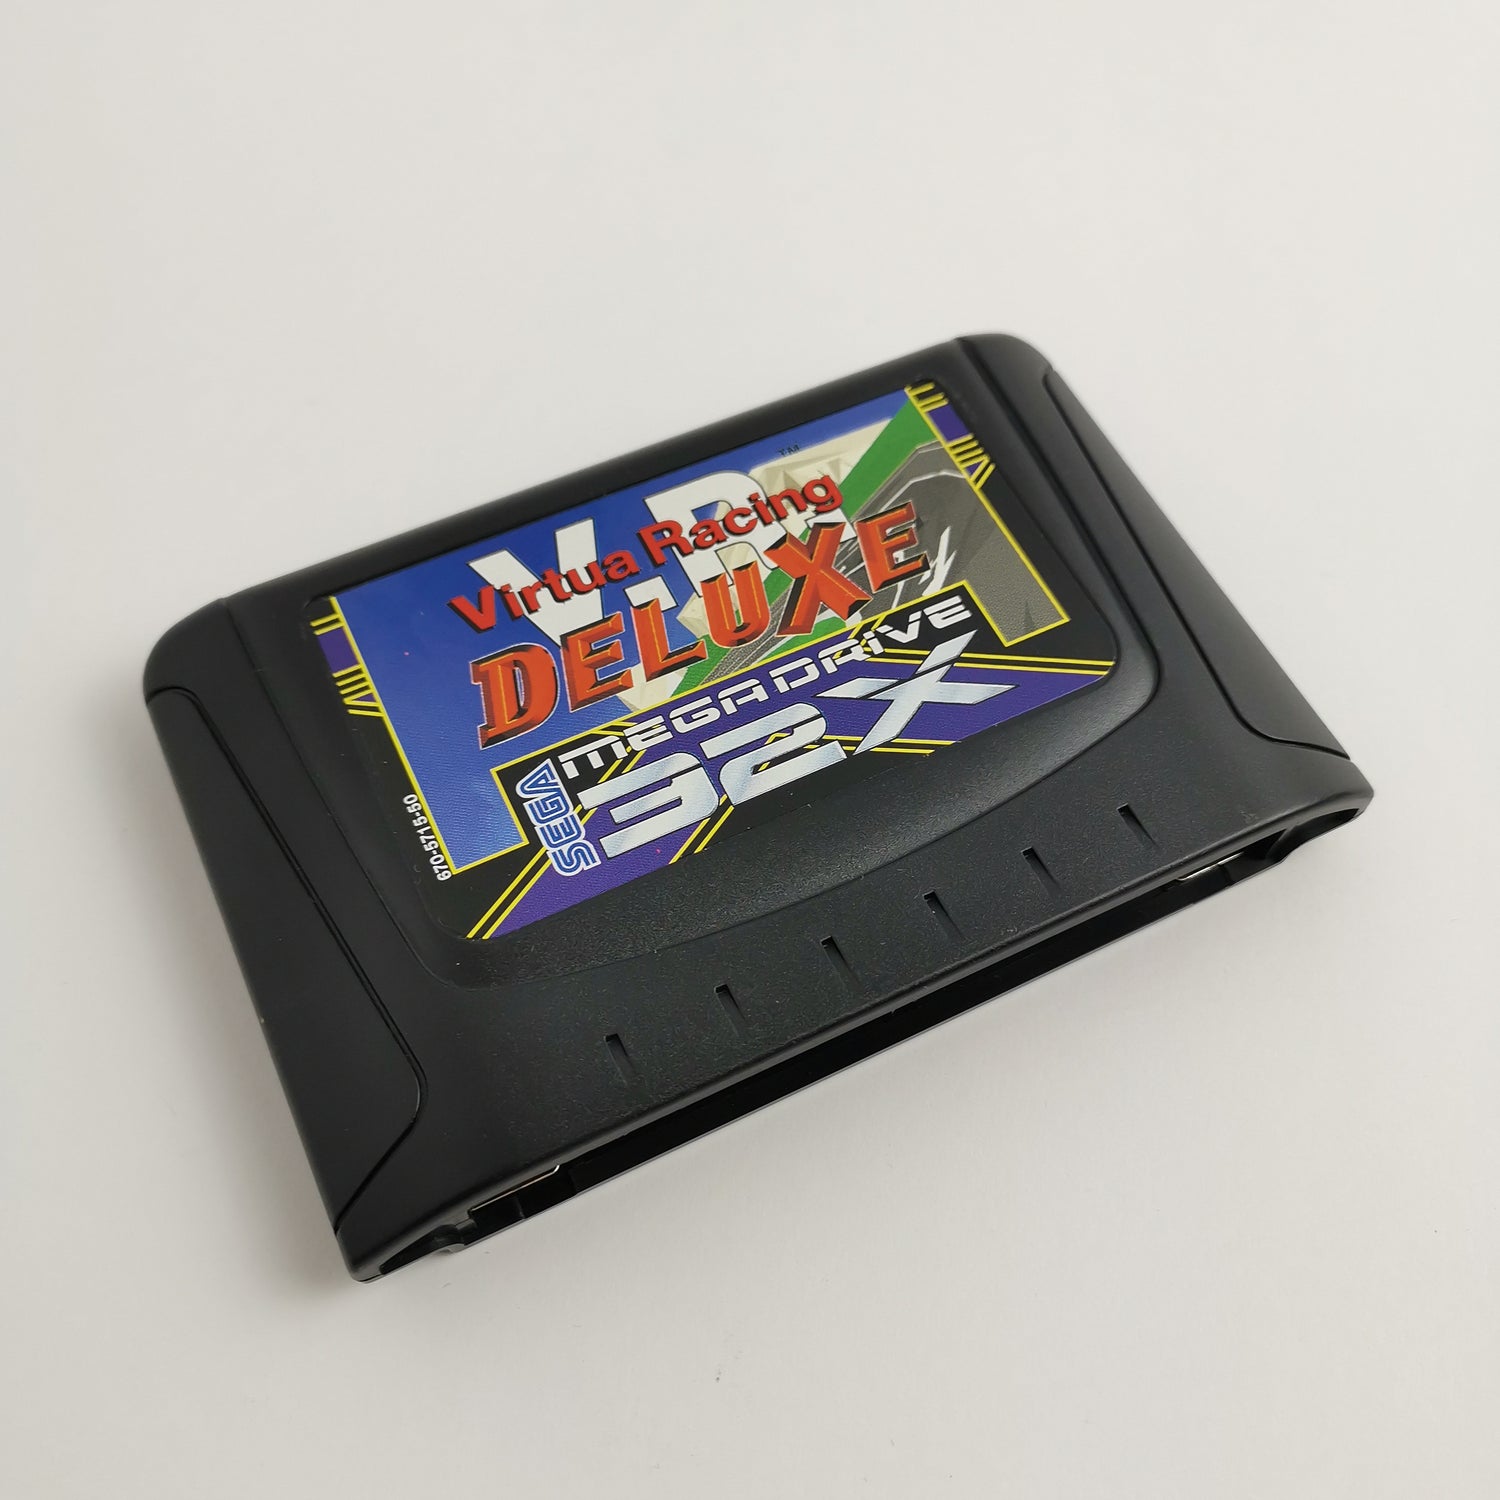 Sega Mega Drive 32X Game 